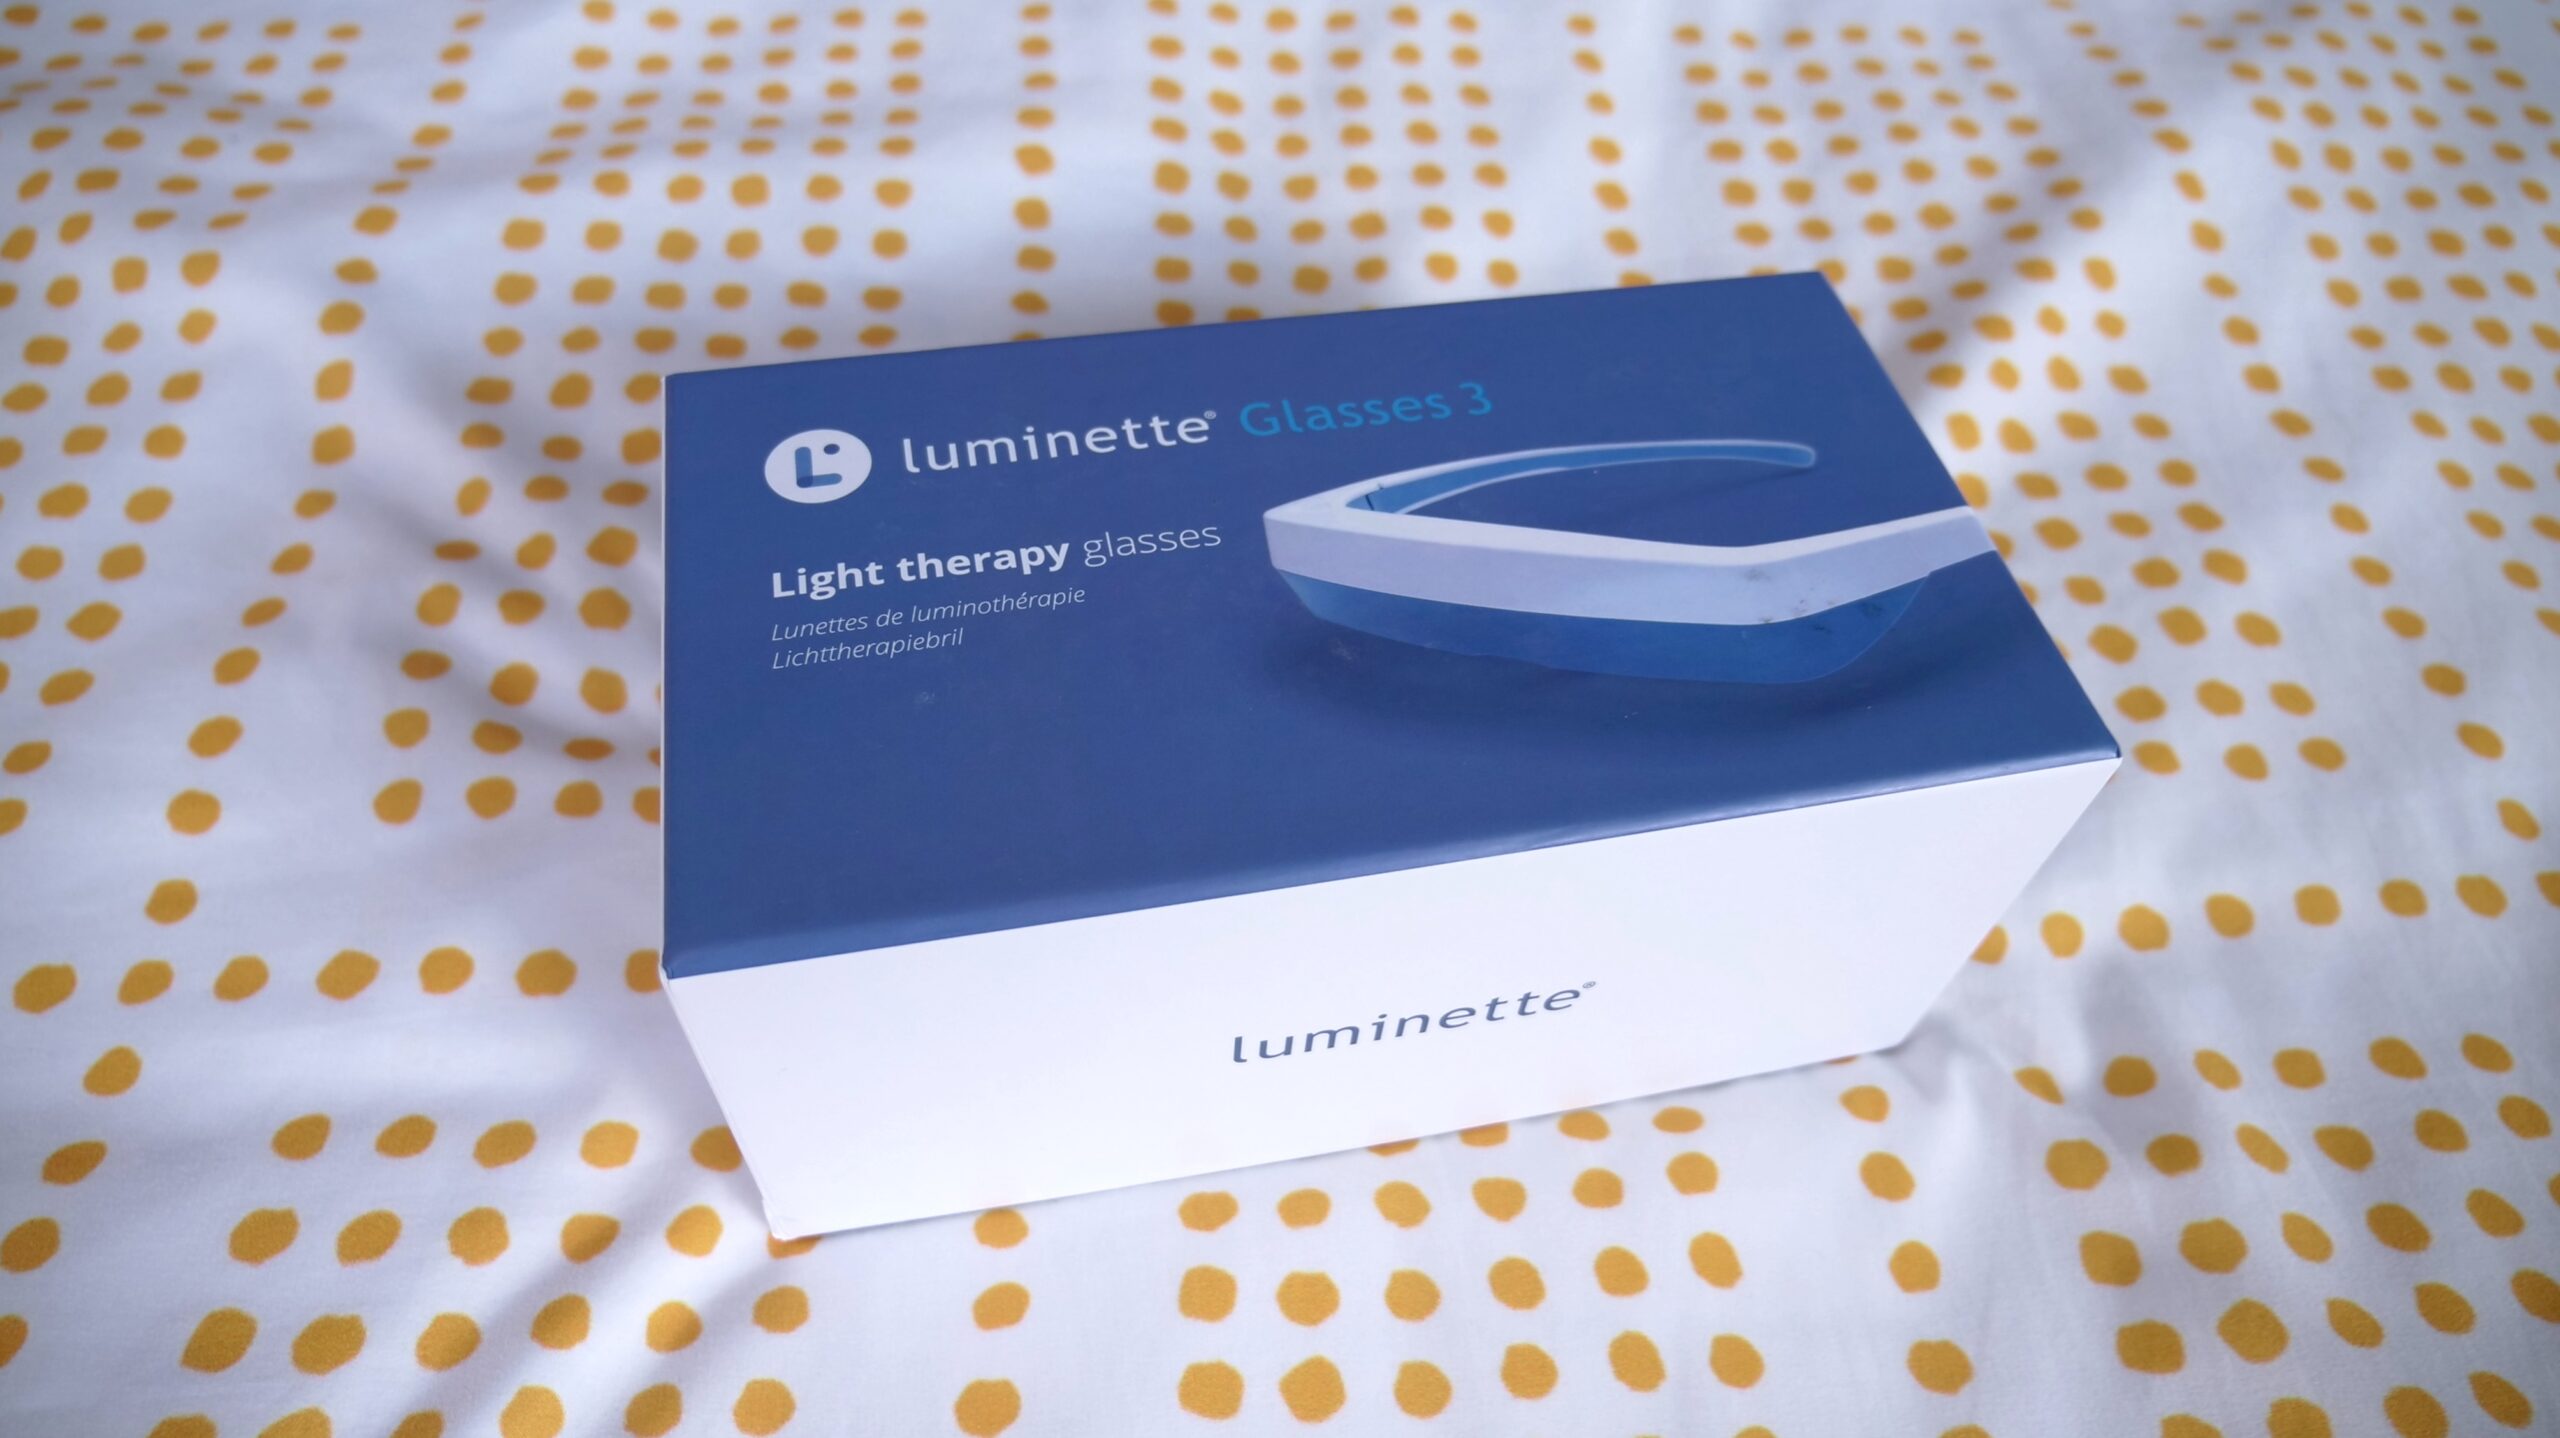 Lunettes de luminothérapie LUMINETTE 3 - LD Medical